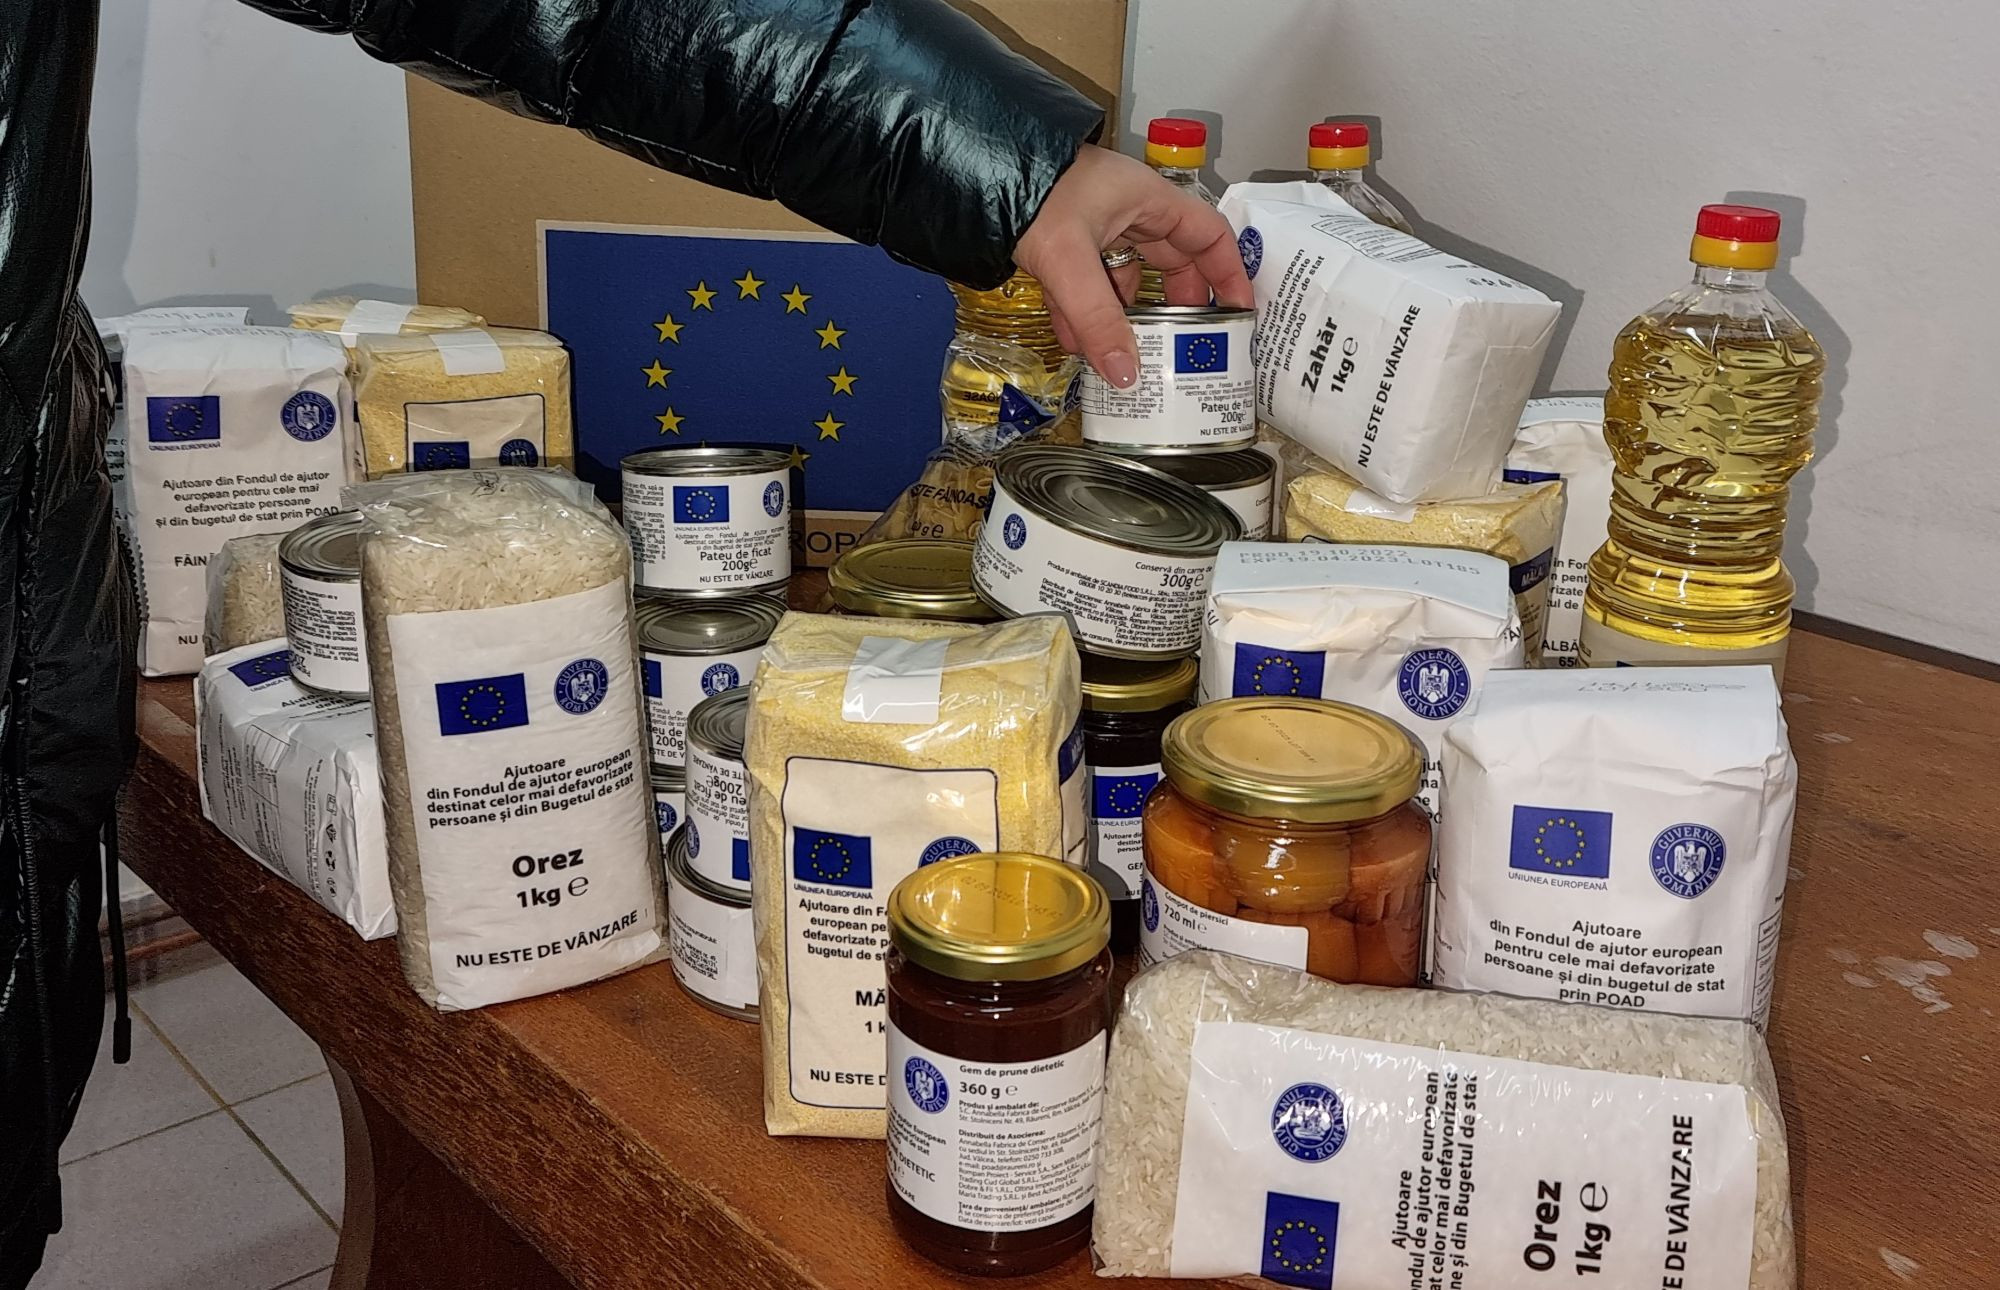 Peste 600 de persoane defavorizate, din Deva, vor primi alimente gratuite de la Uniunea Europeană – din 5 decembrie 2022!